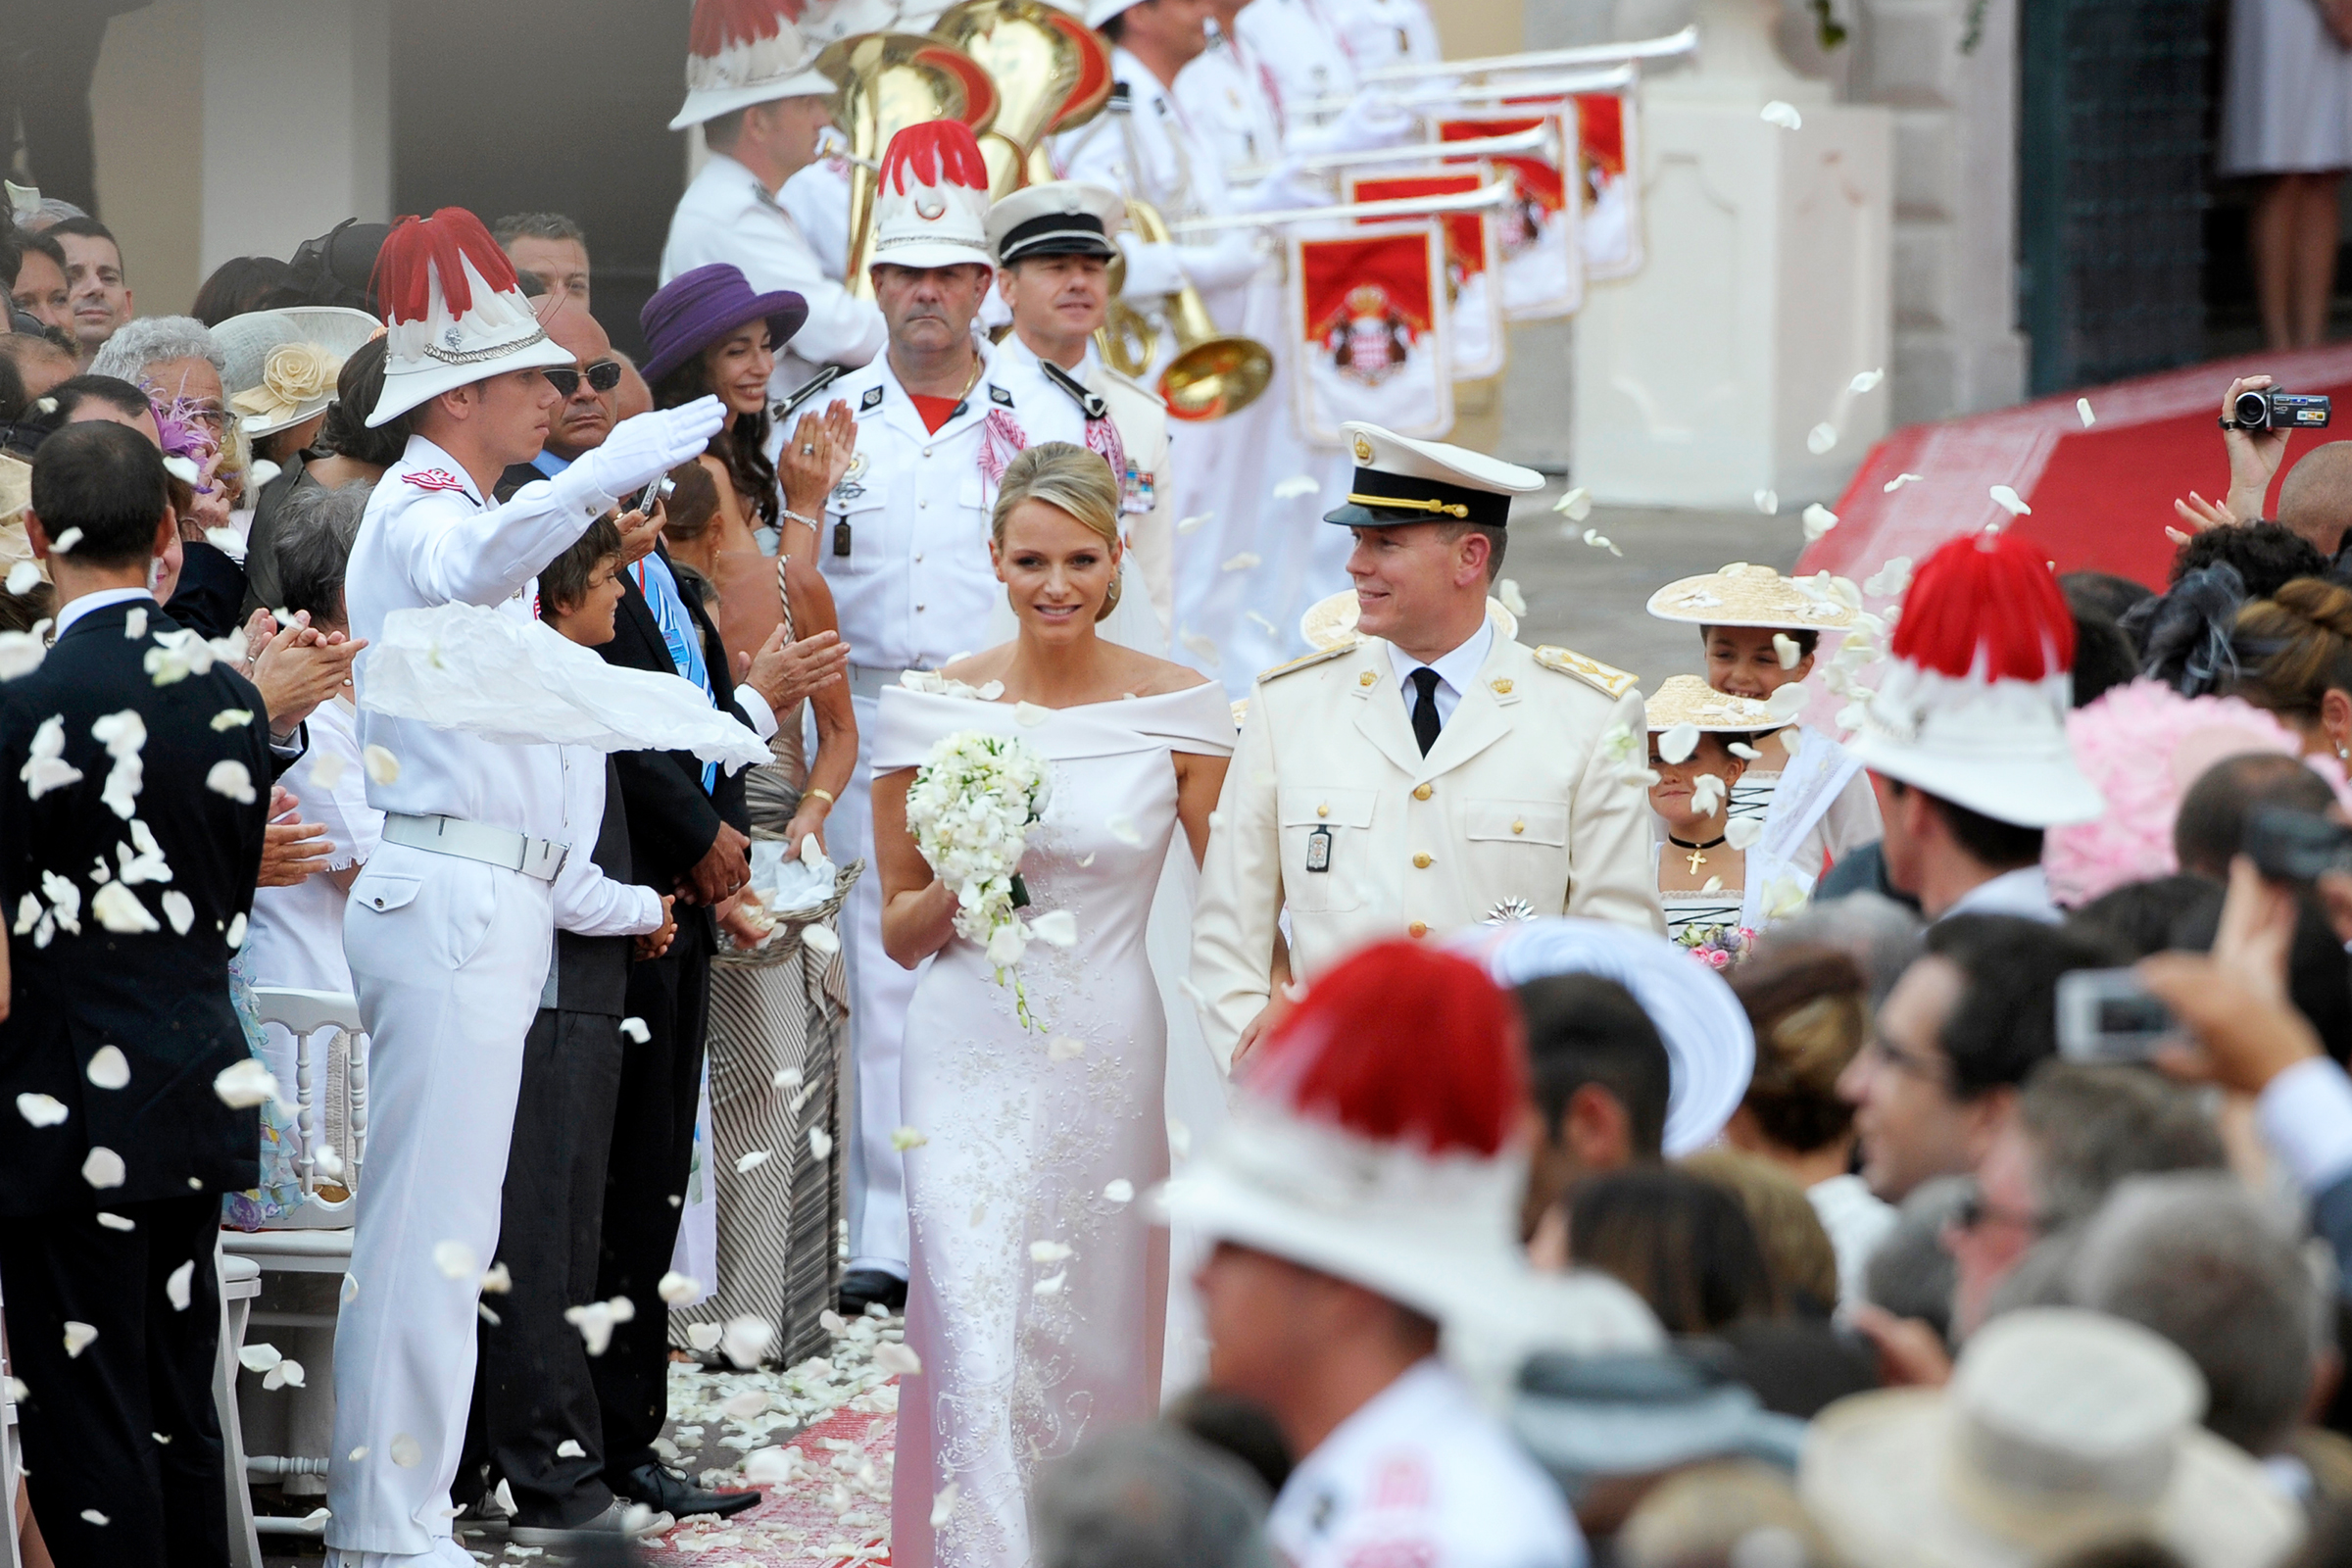 В 2011 году состоялась свадьба князя Монако Альбера II и профессиональной спортсменки-пловчихи из ЮАР Шарлен Уиттсток. Церемония обошлась в &euro;19,7 млн (более $27 млн по курсу того времени), причем сообщалось, что расходы поровну поделили государство и сам монарх.
